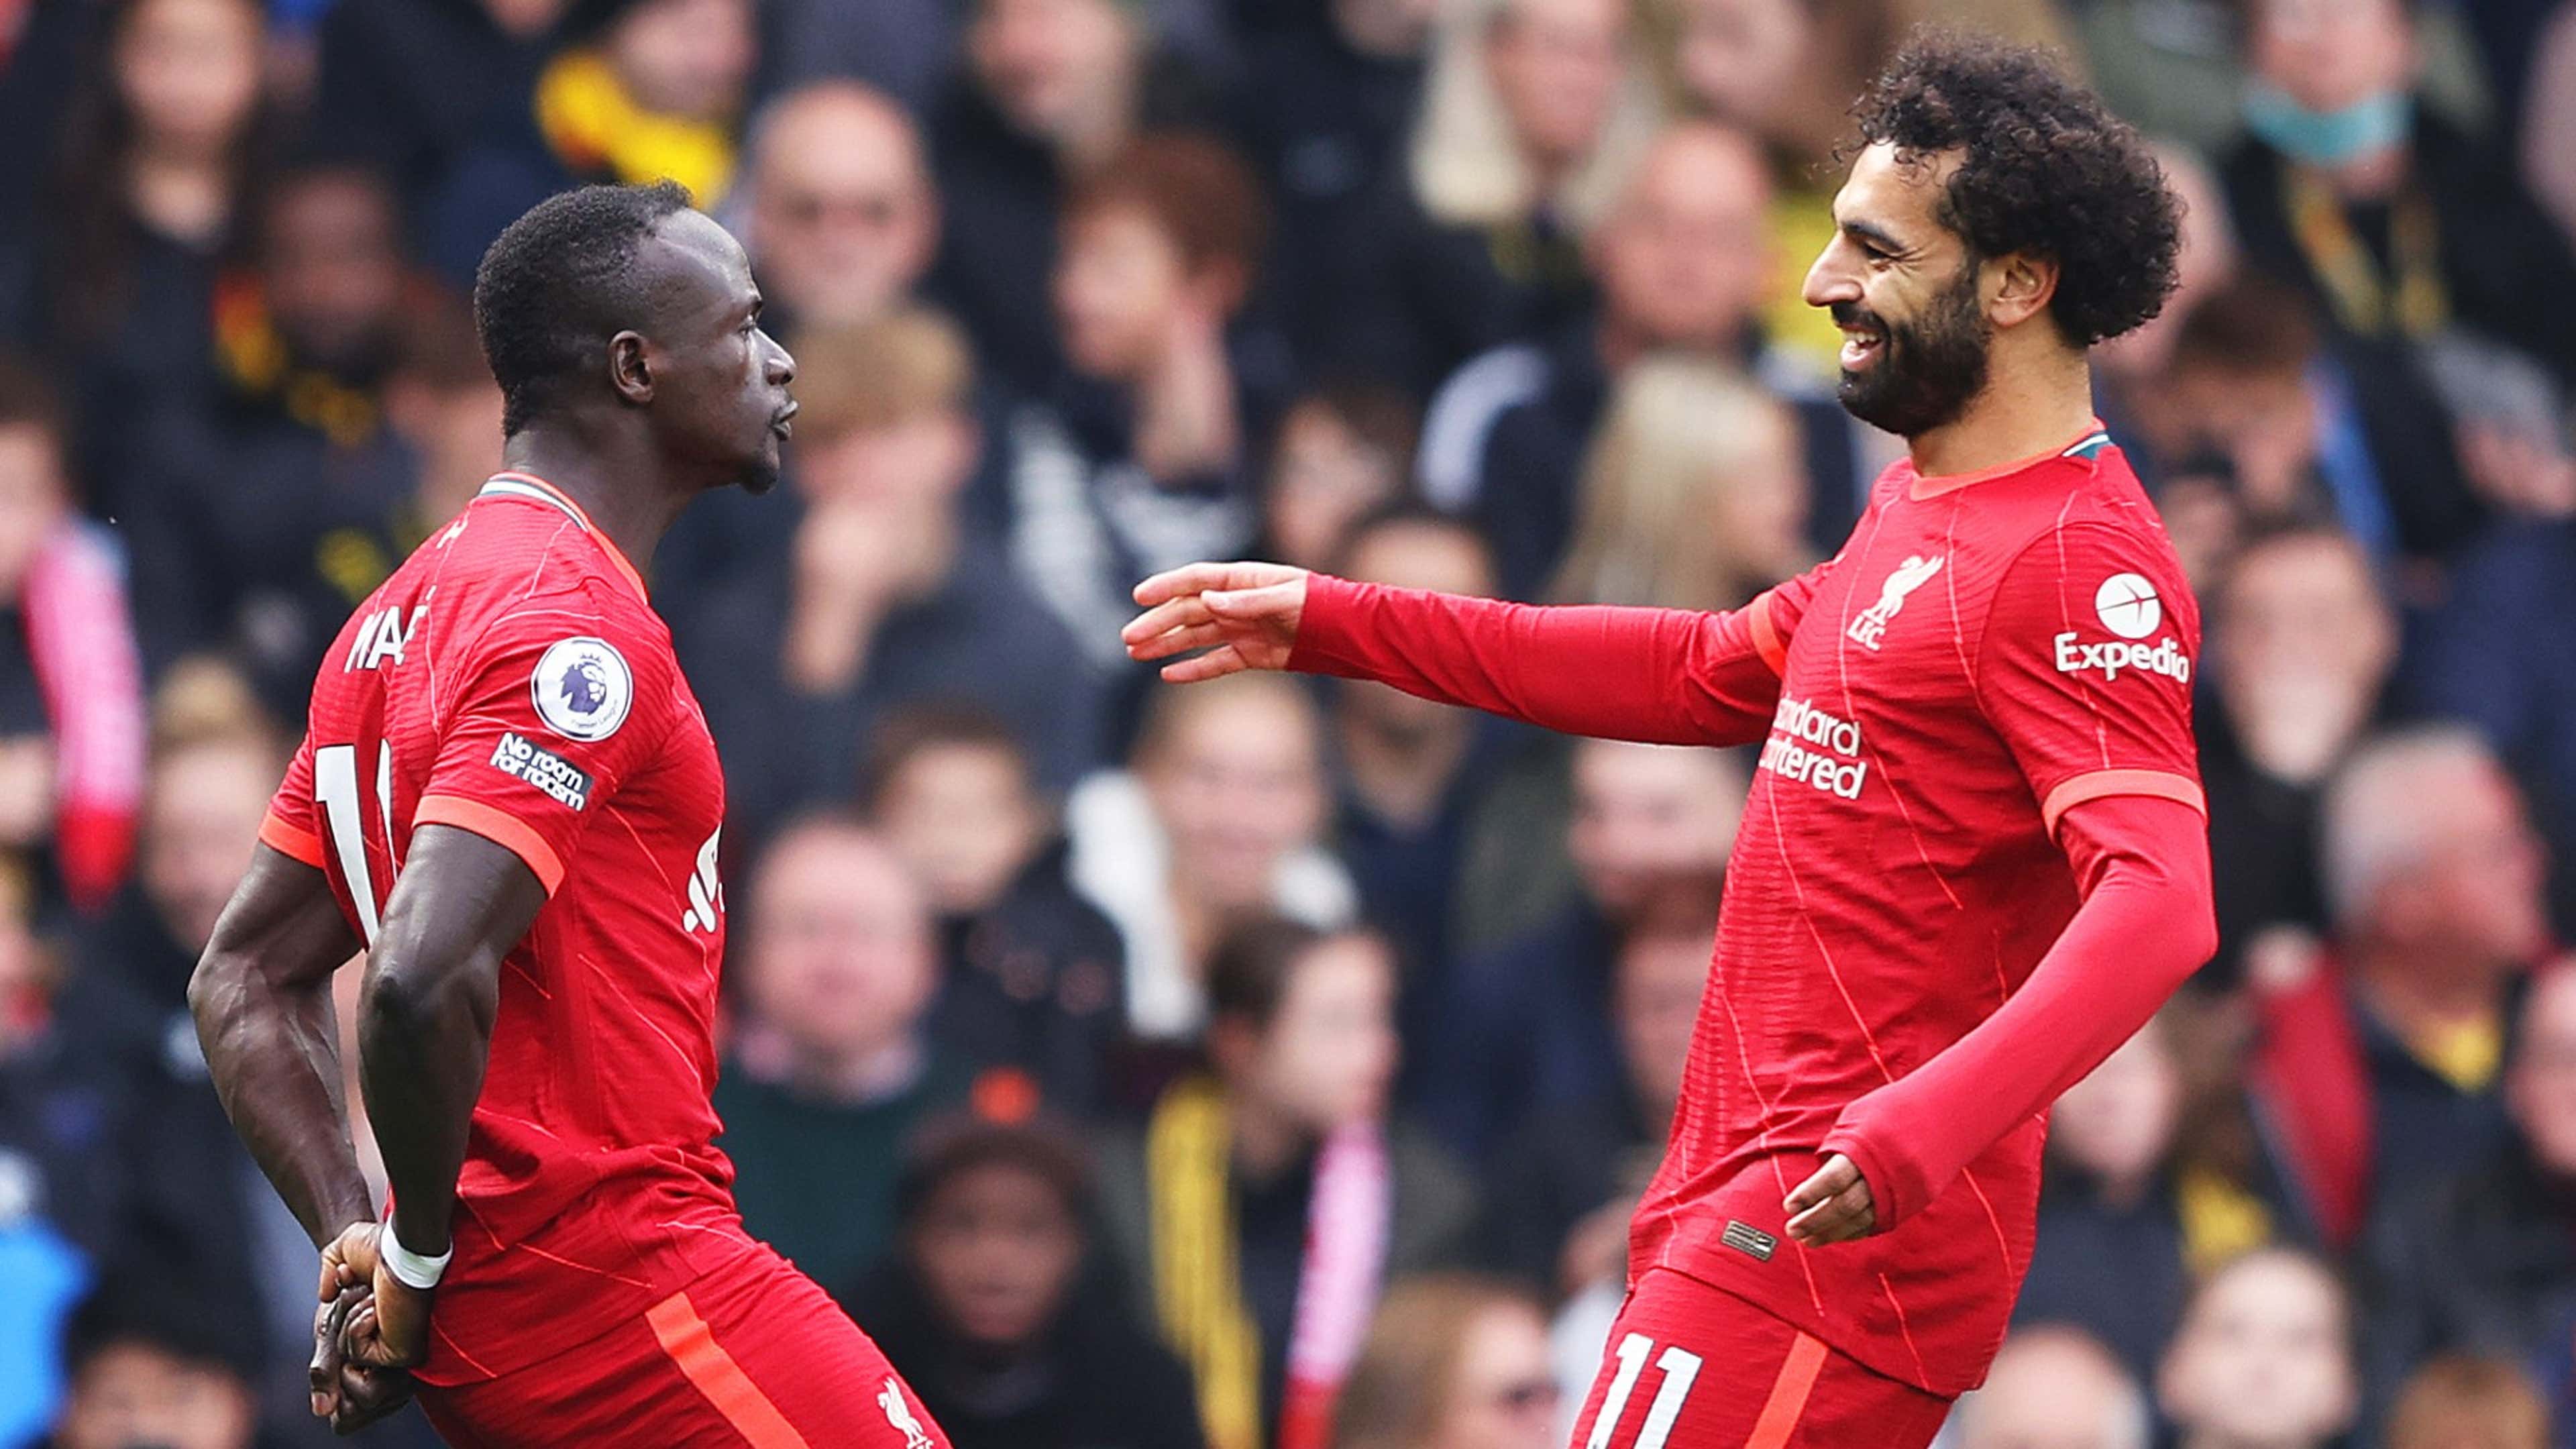 Mané ou Salah: quem é o melhor do Liverpool atualmente?